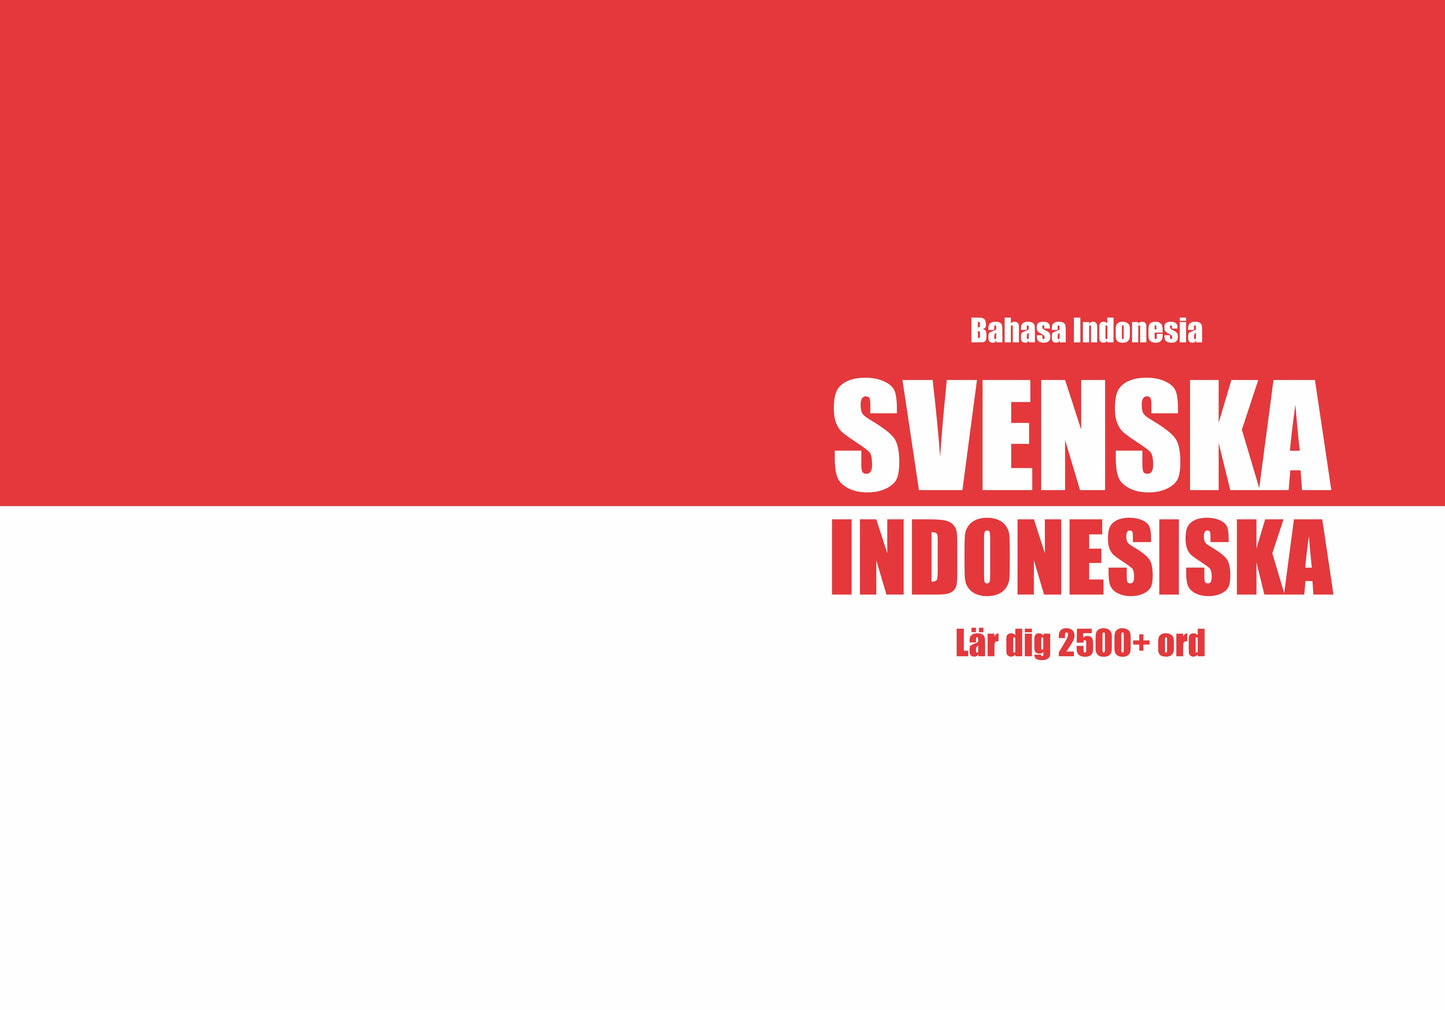 Svenska-indonesiska anteckningsbok att fylla i